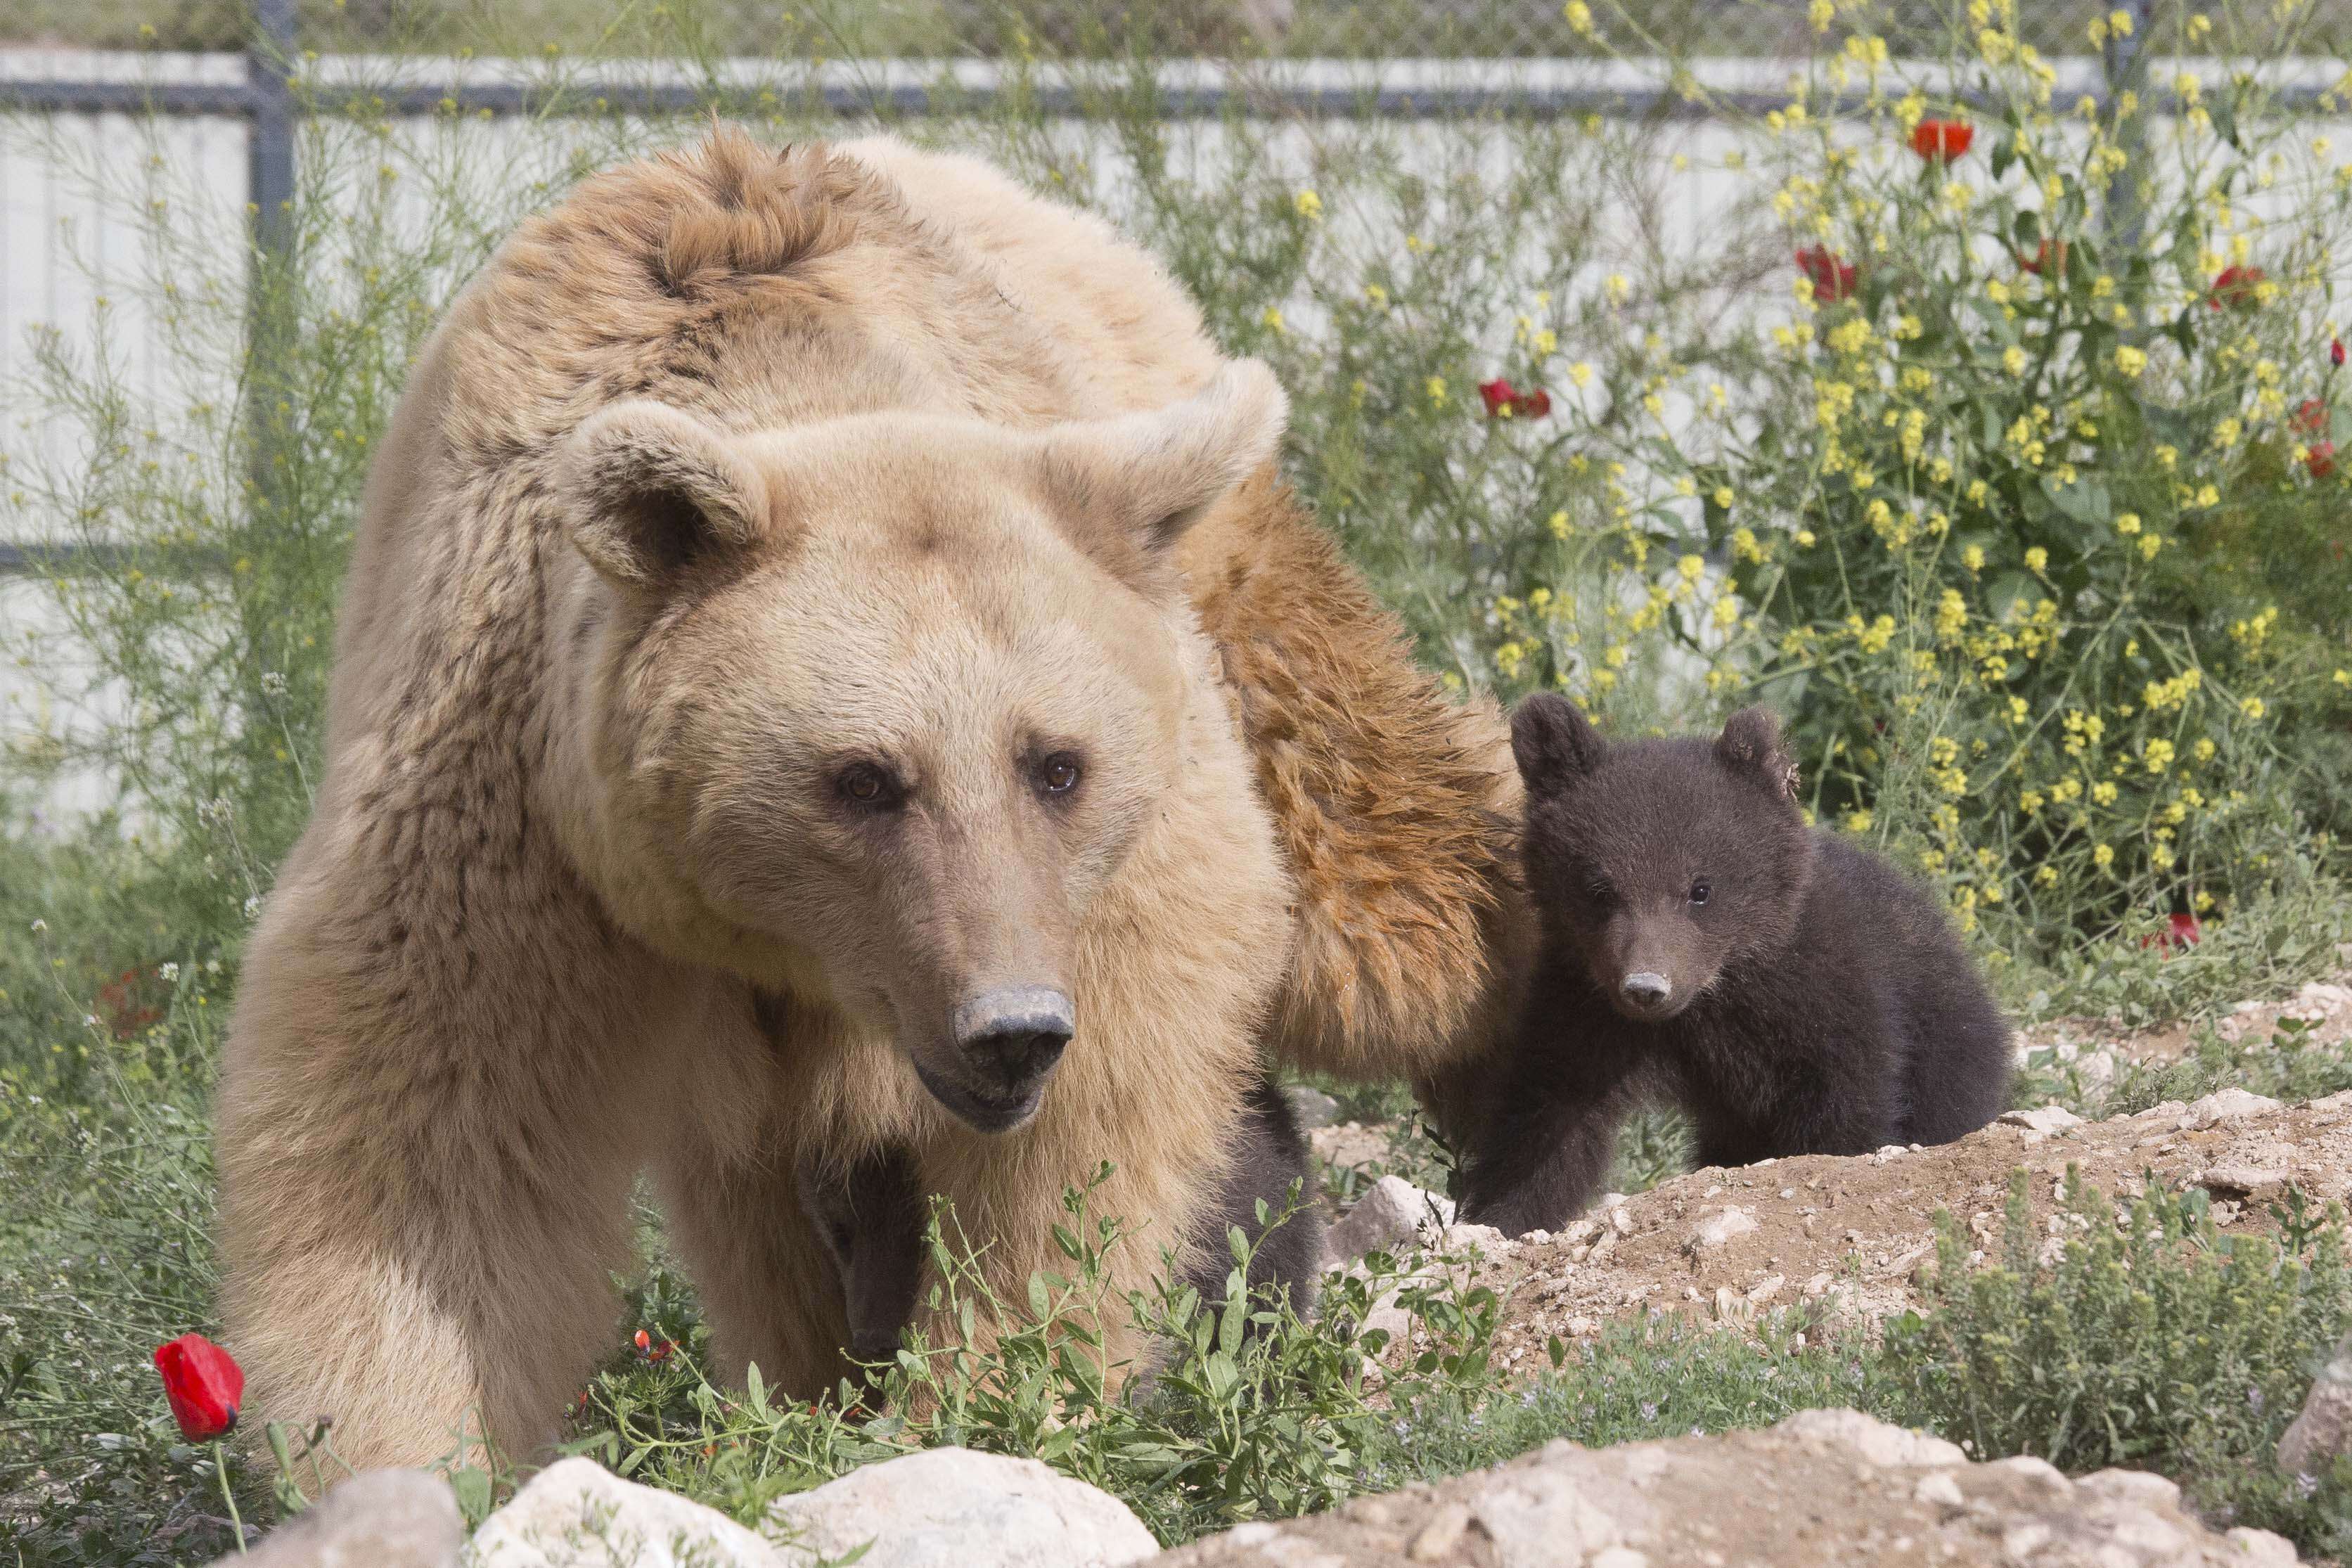 bear rescue cub sanctuary